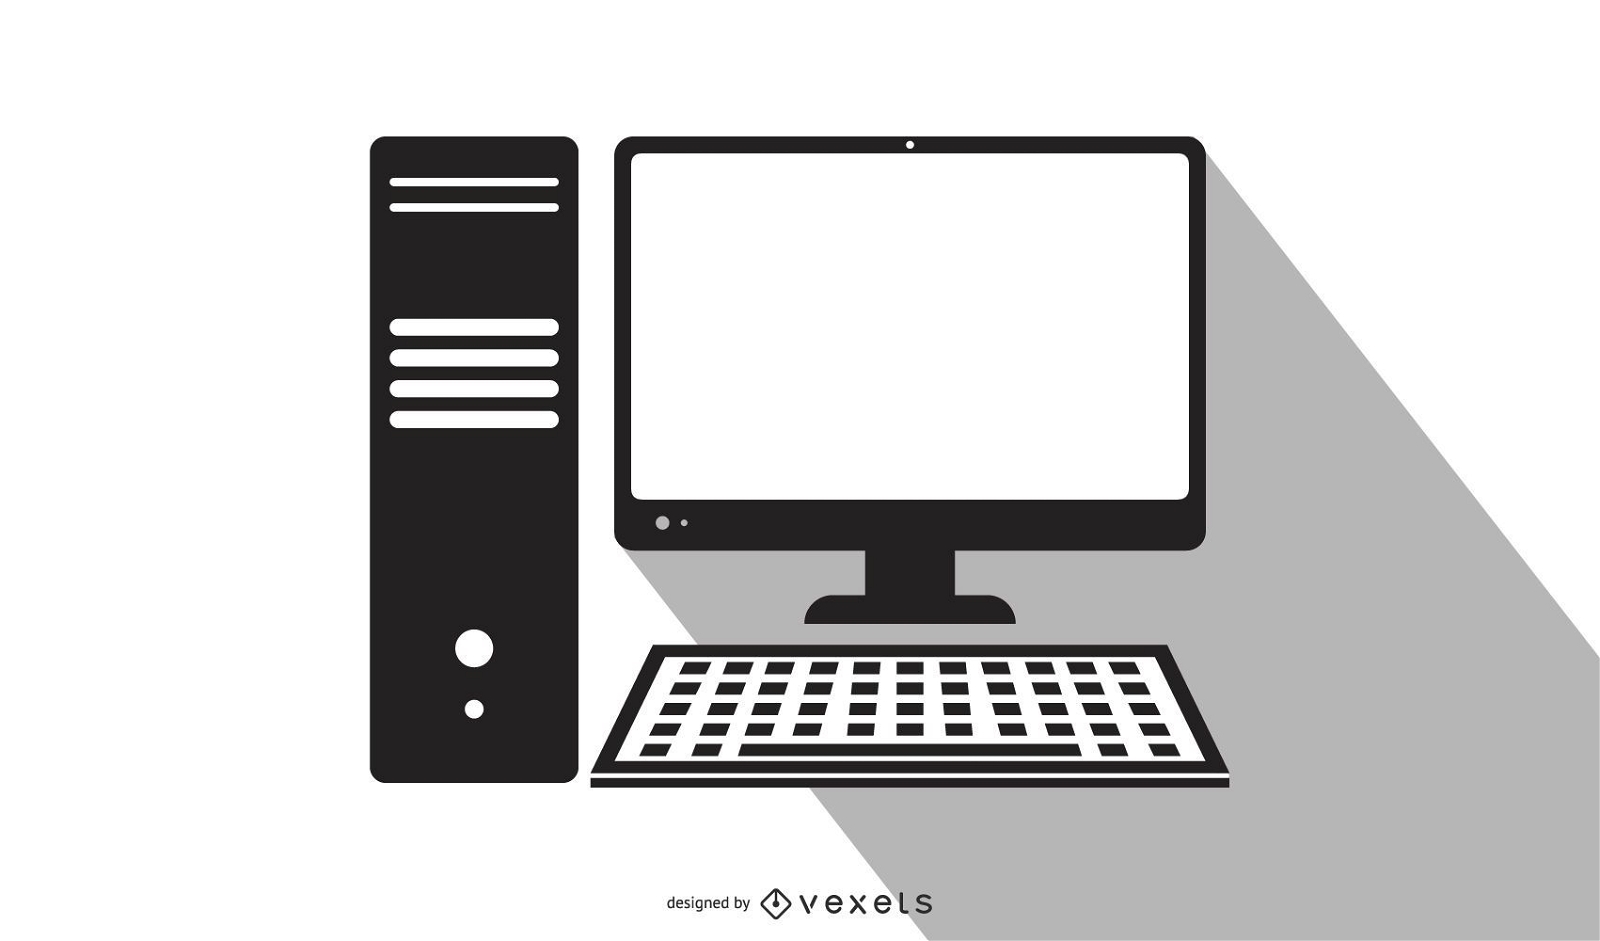 Descarga Vector De PC De Escritorio Blanco Y Negro Dibujos Animados